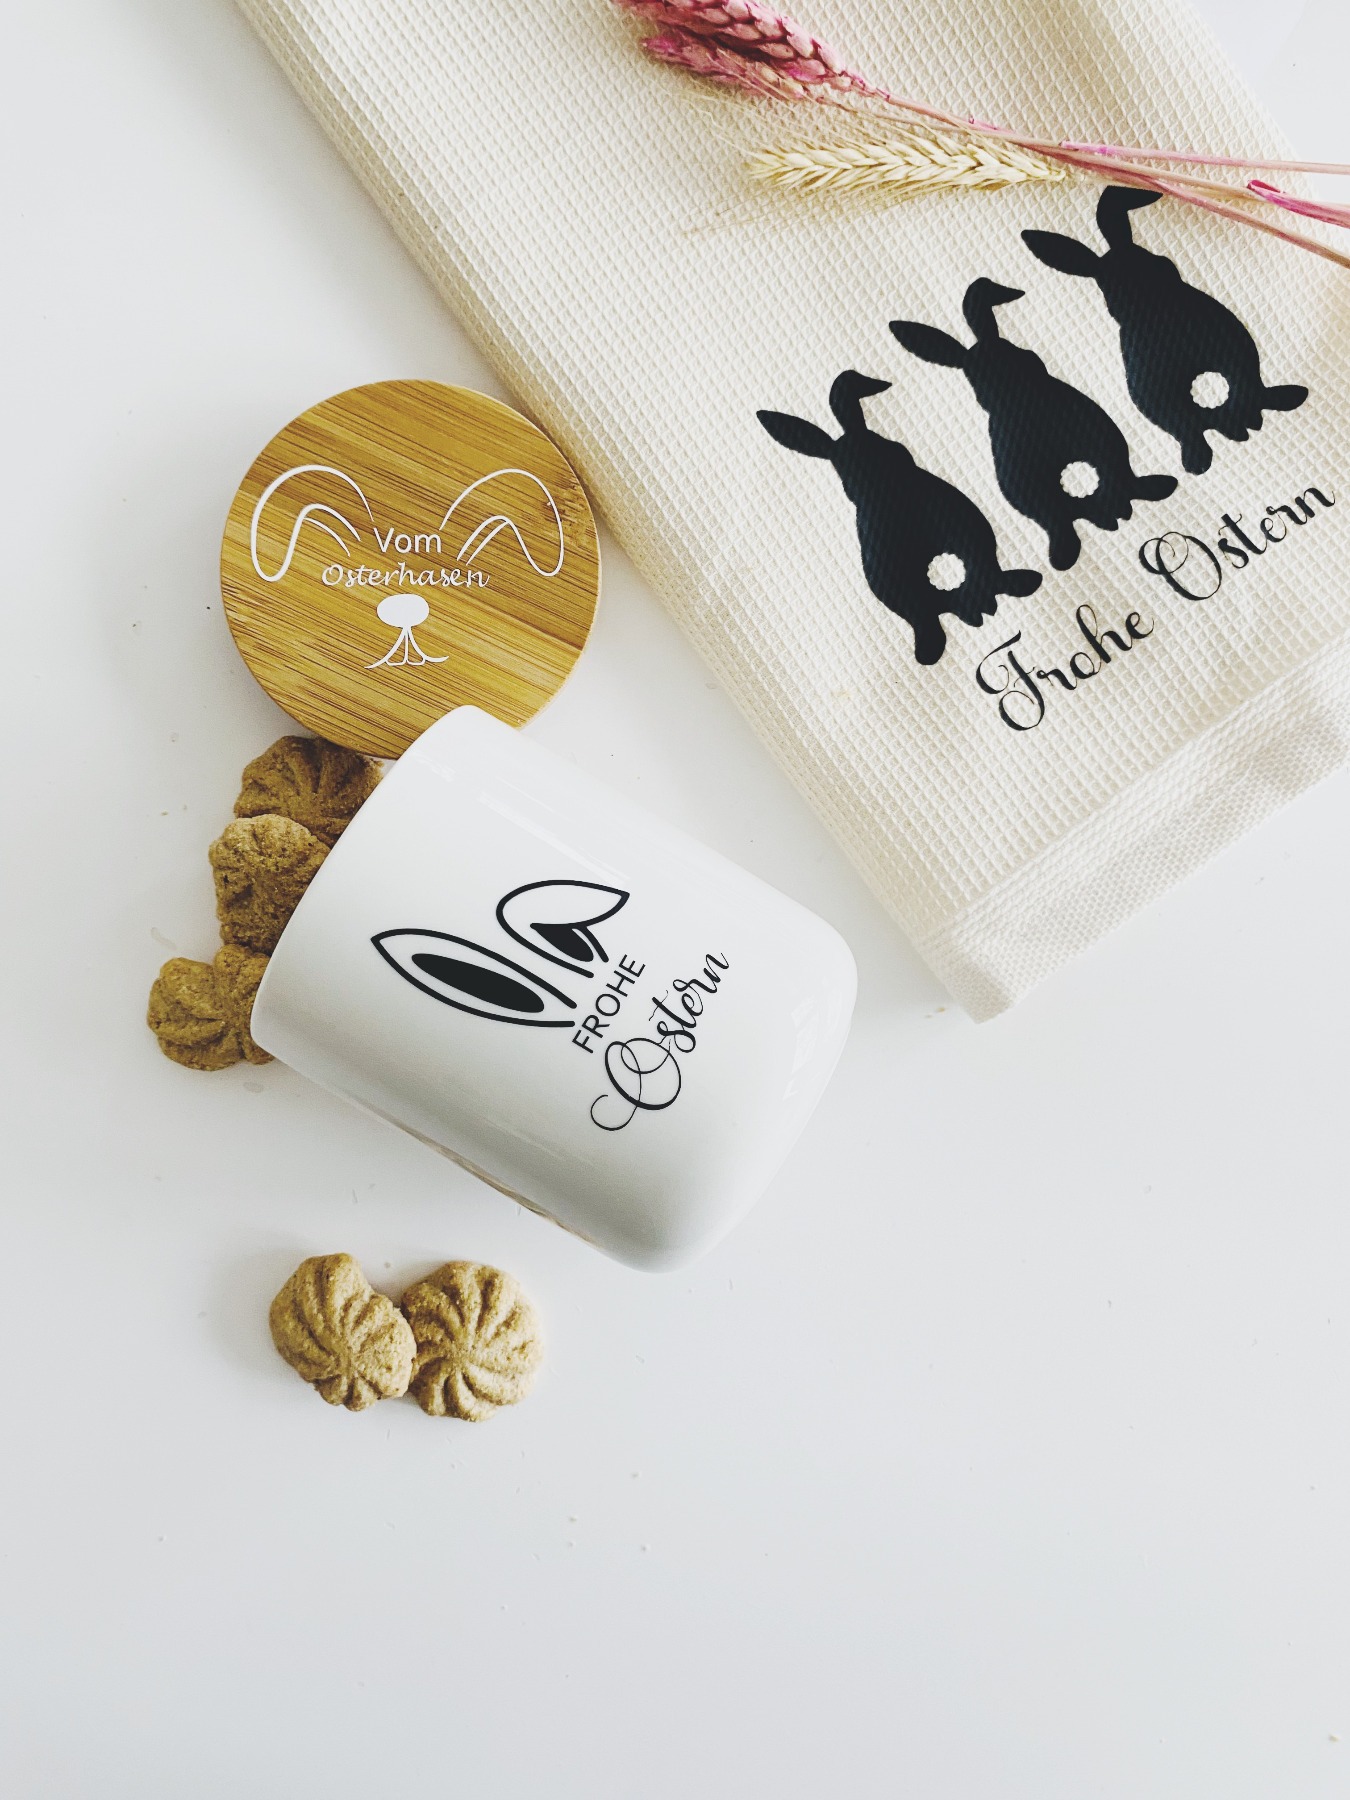 Keksdose Ostern - Keramikdose vom Osterhasen, Geschenkidee zu Ostern oder Deko für die Küche 3